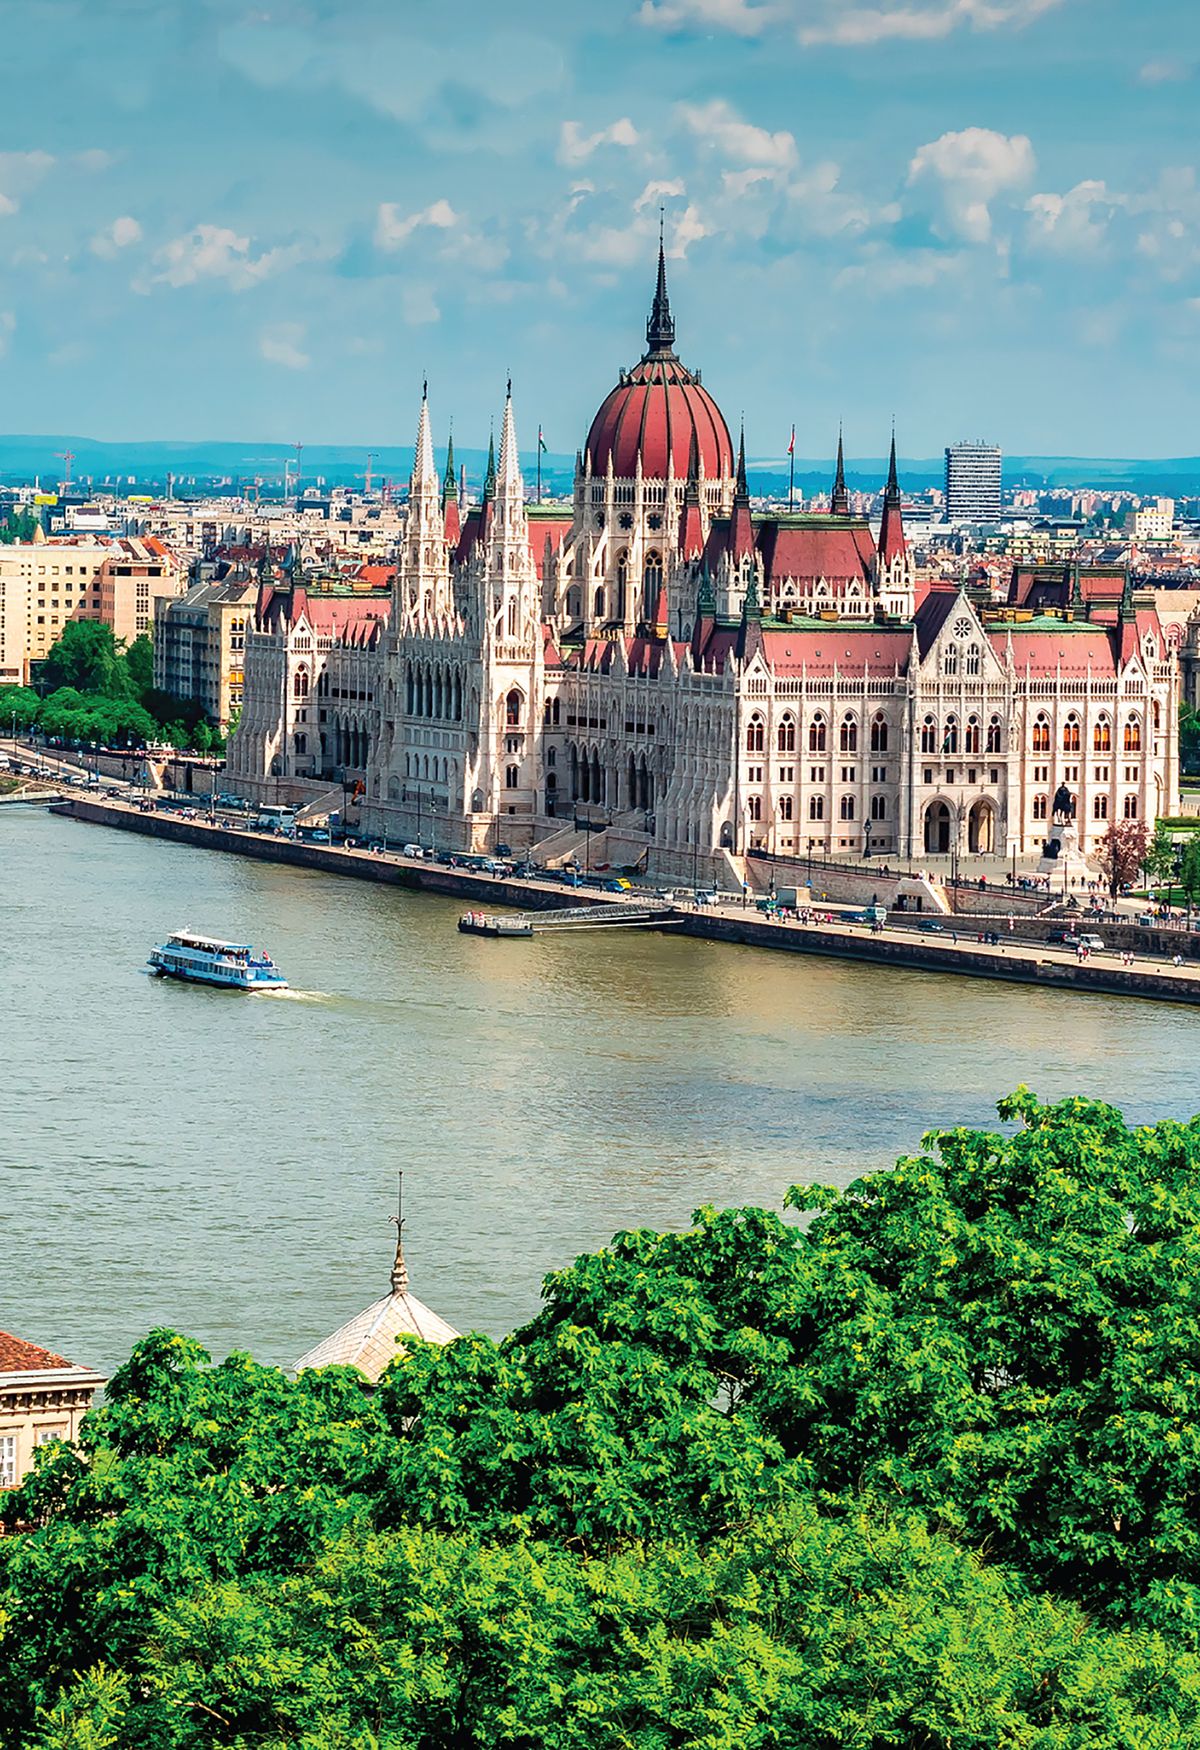 Special Tours ofrece 6 mil plazas para sus cruceros fluviales por el Rhin y el Danubio para para Latinoamérica y Estados Unidos.